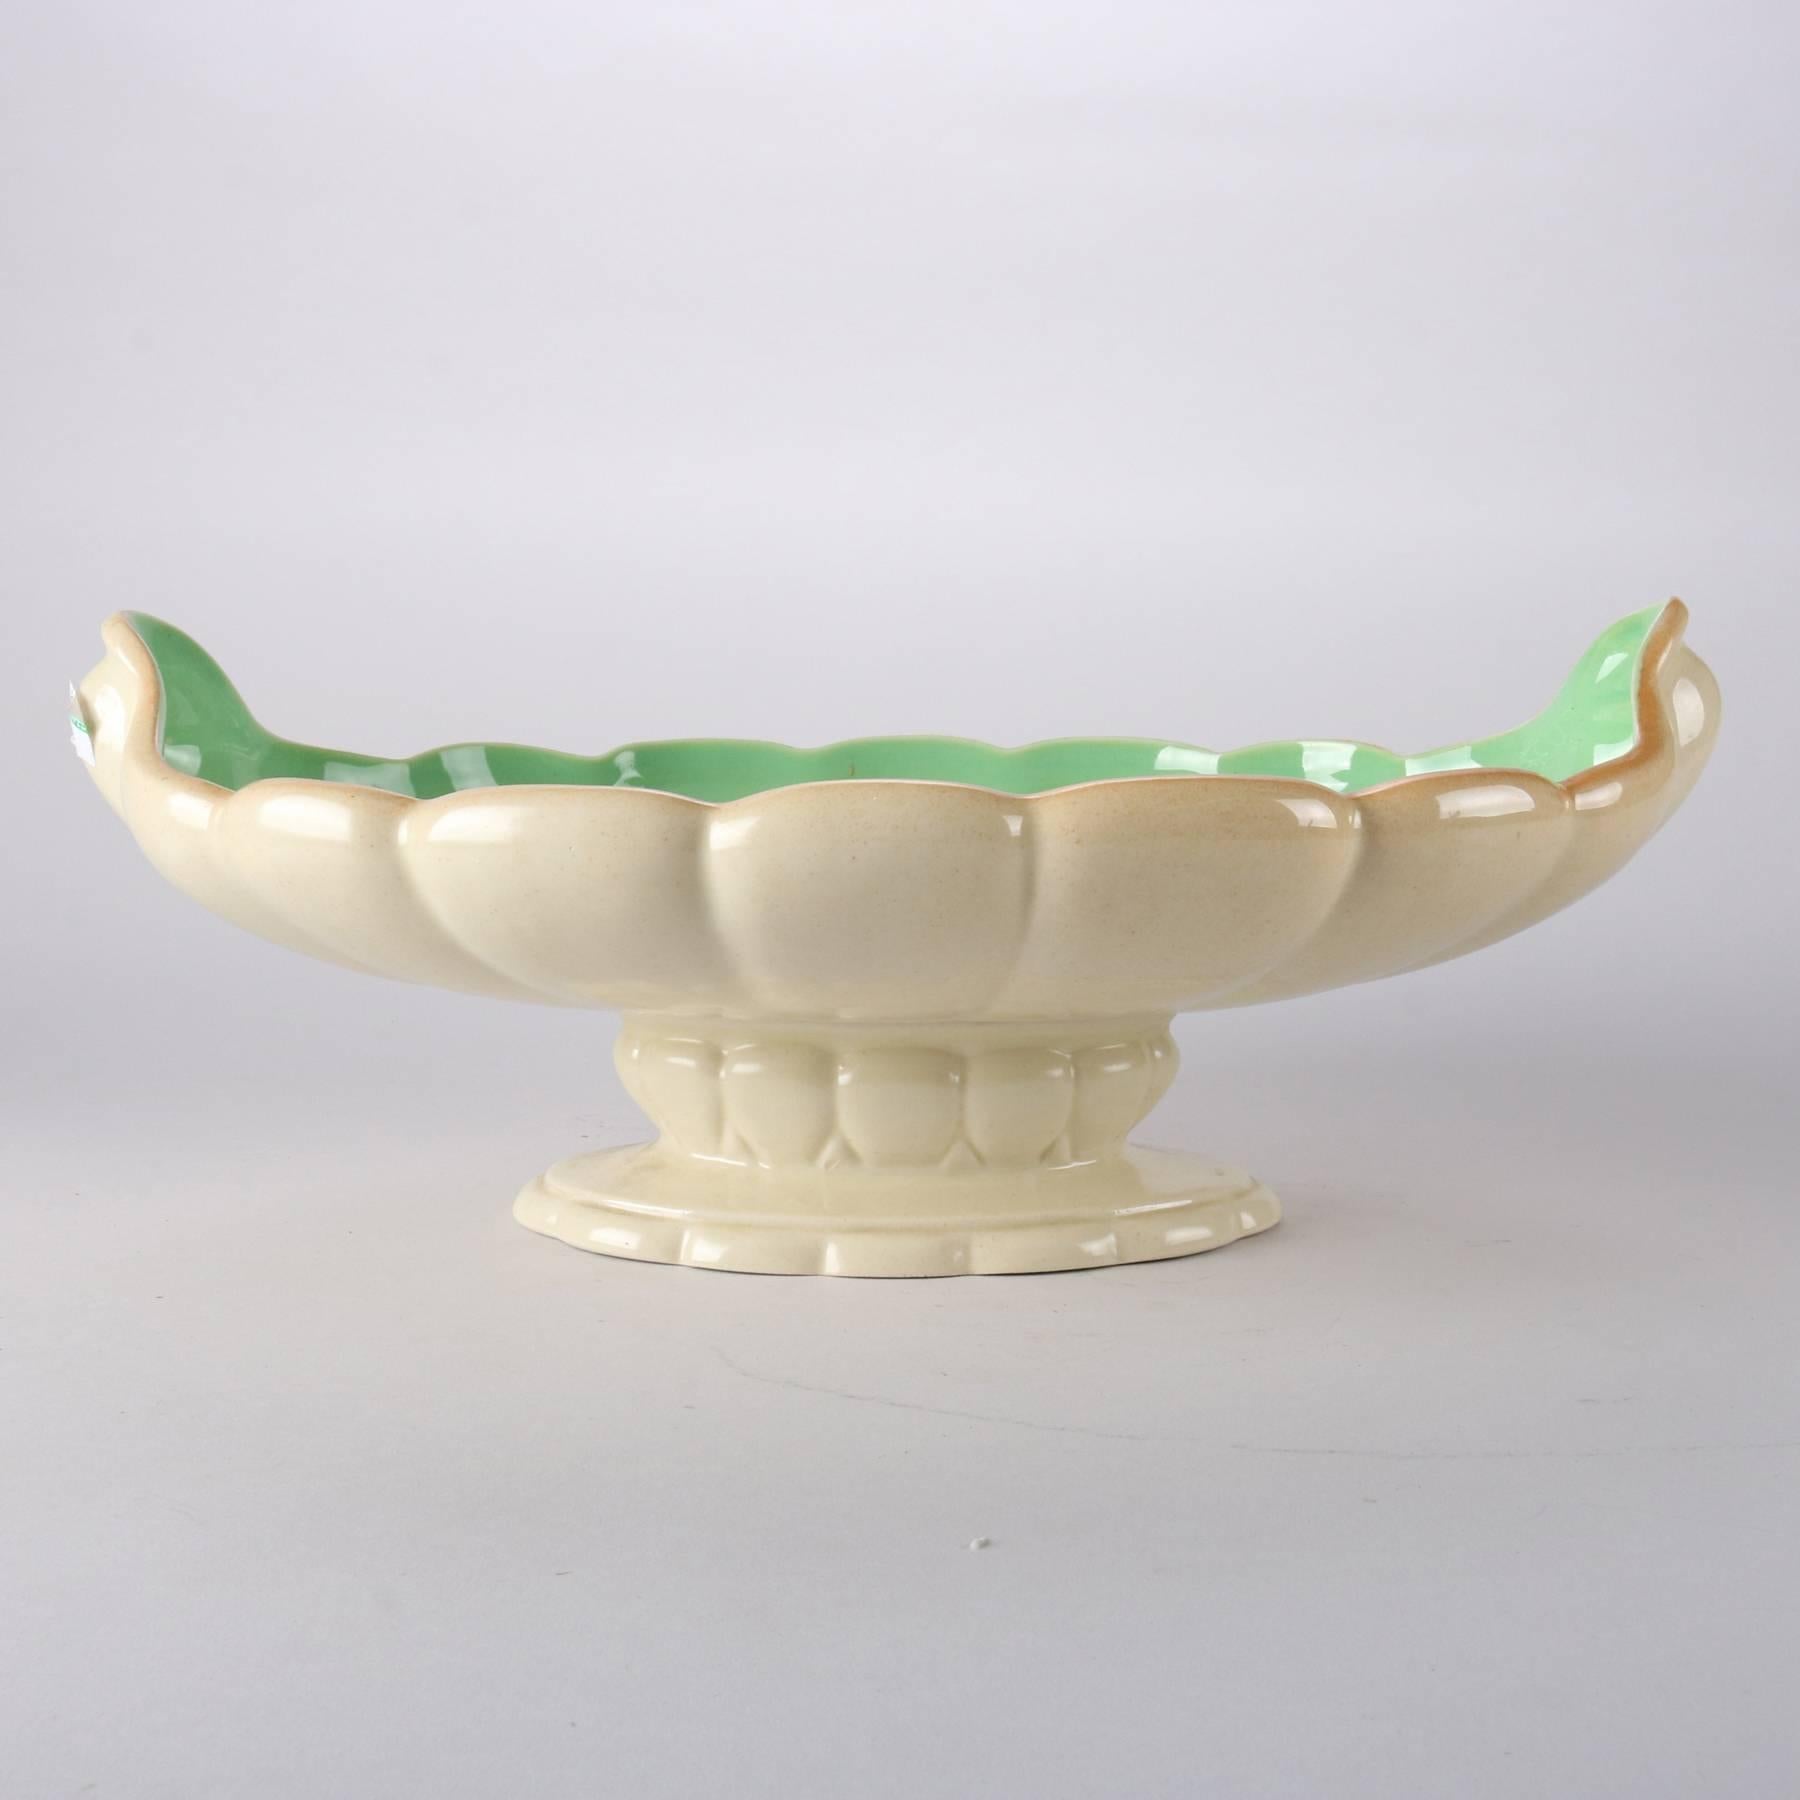 Antique Art Nouveau Cowan art pottery center console bowl features scallop form bowl atop pedestal base, pottery maker mark on base, 20th century

Measures - 6